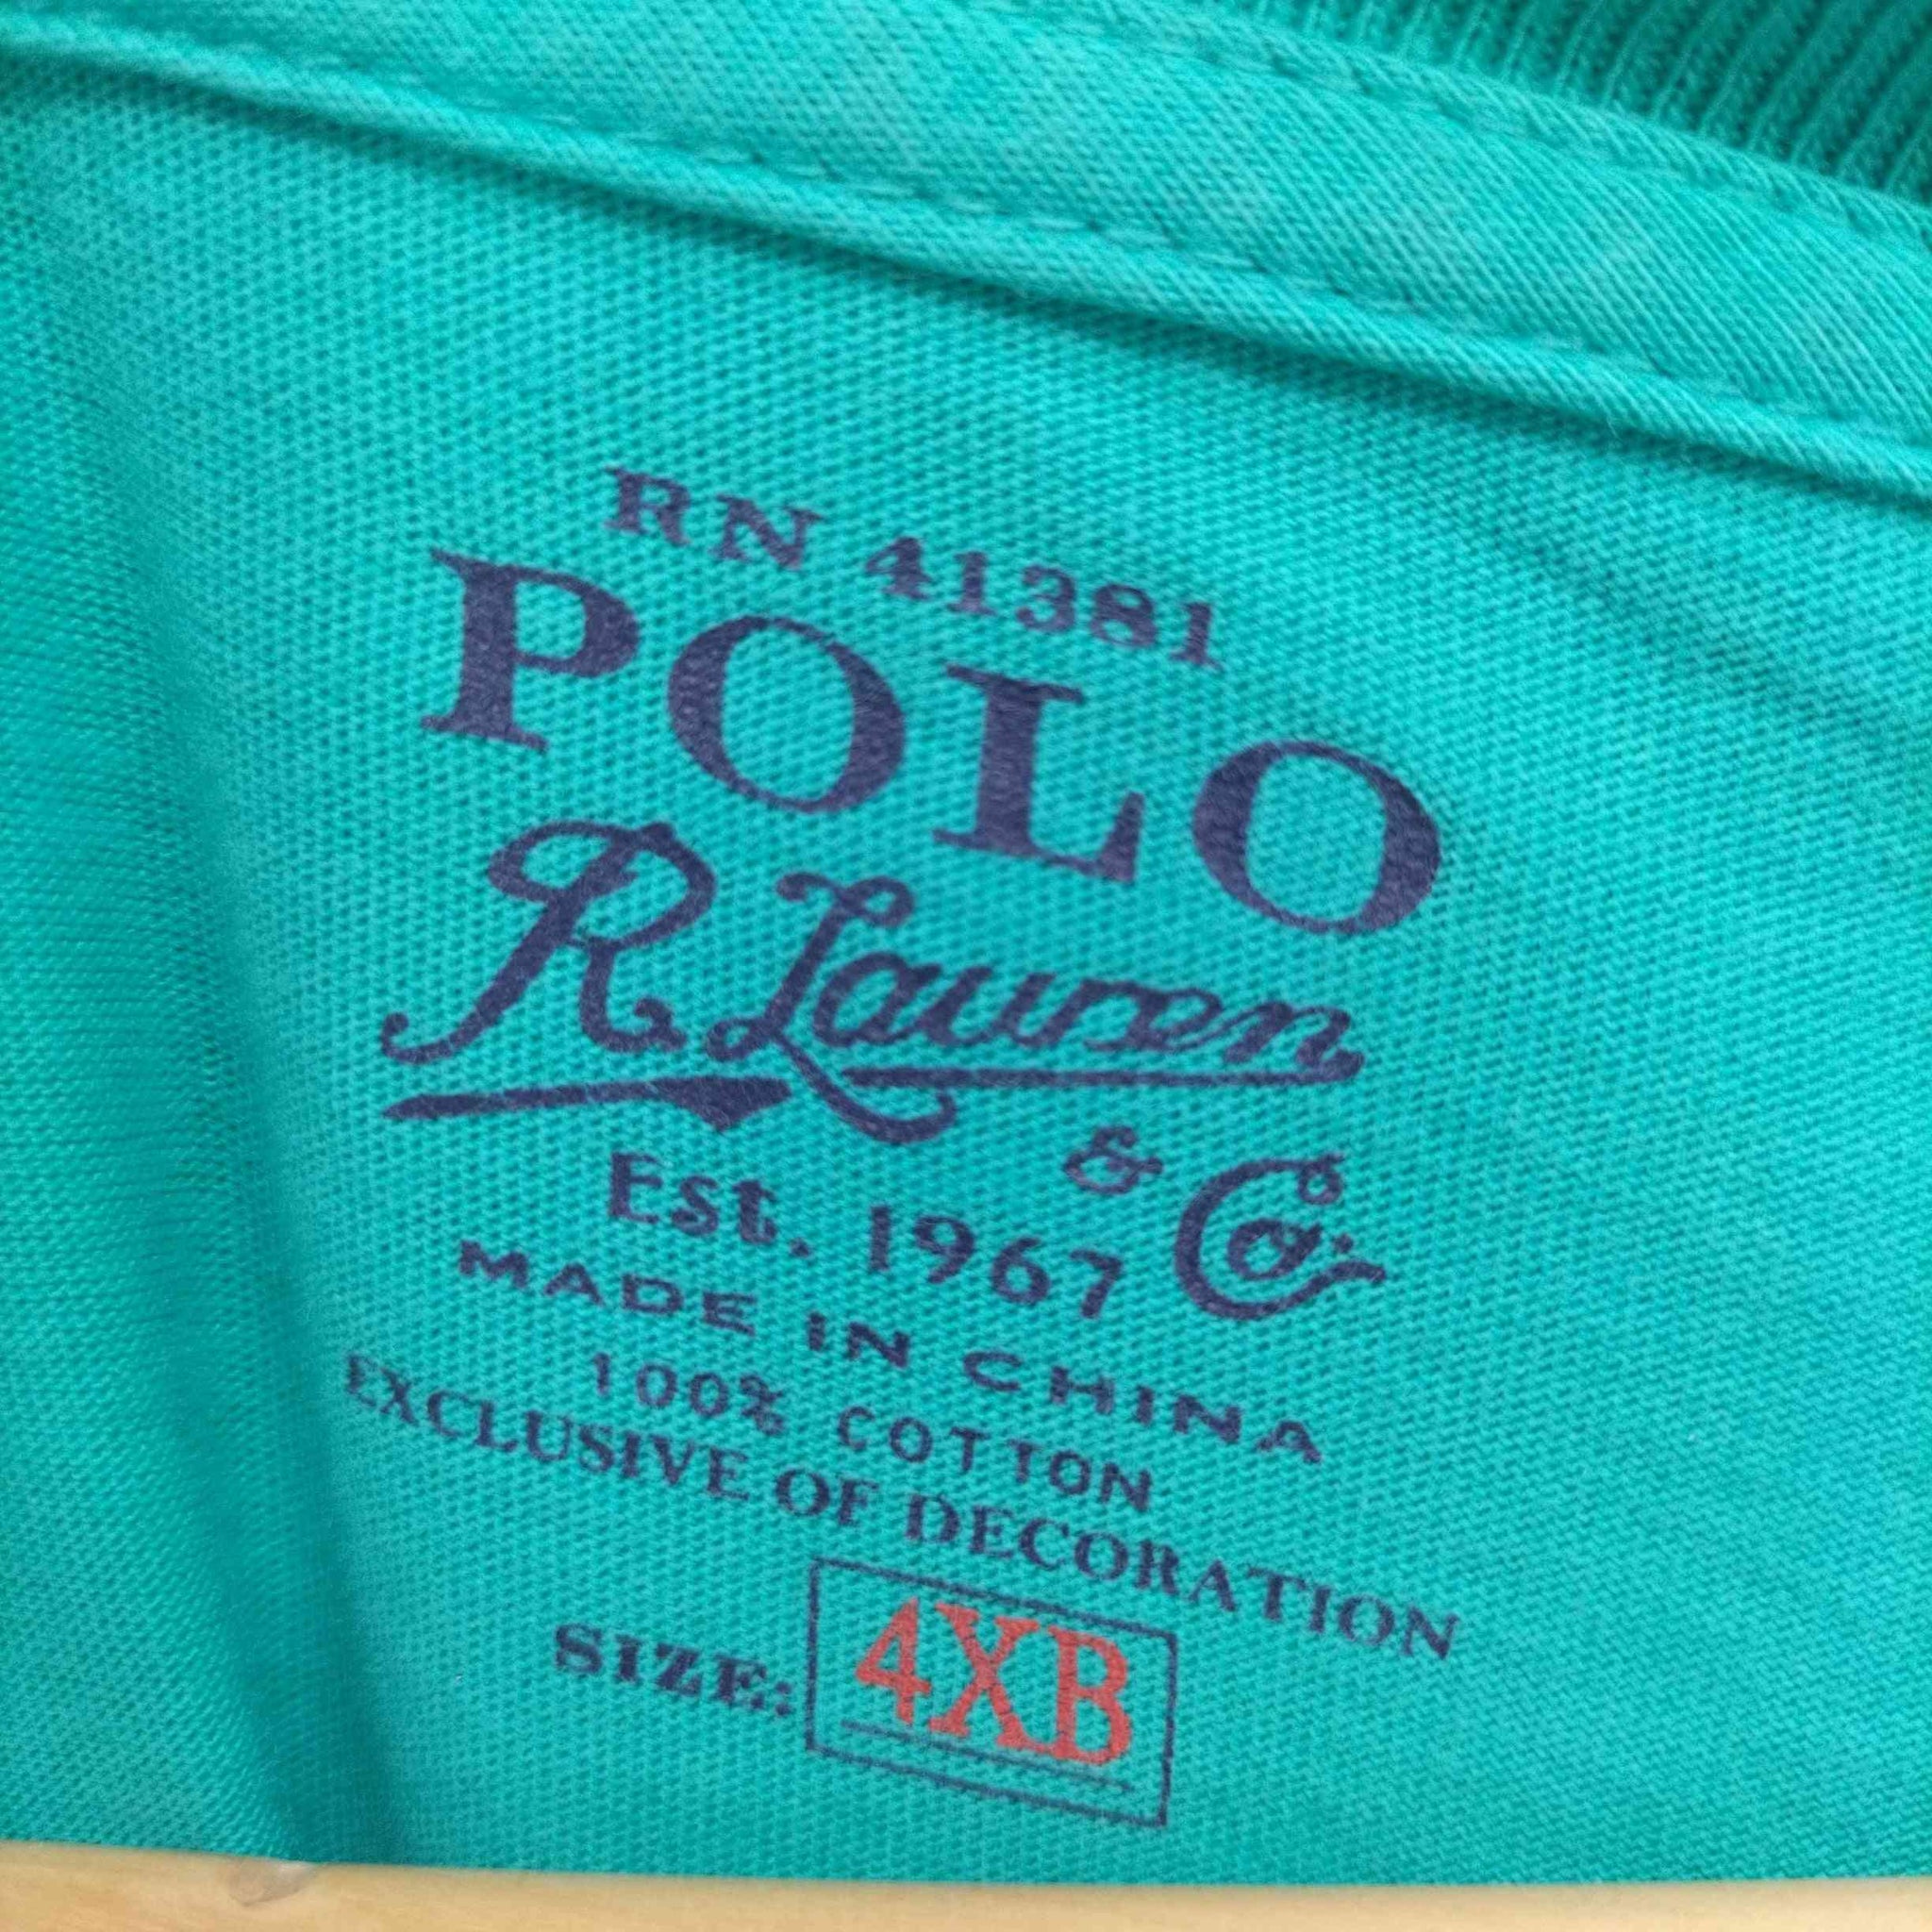 POLO RALPH LAUREN(ポロラルフローレン)ポニー 刺繍 ポケット S/S Tシャツ ビッグサイズ